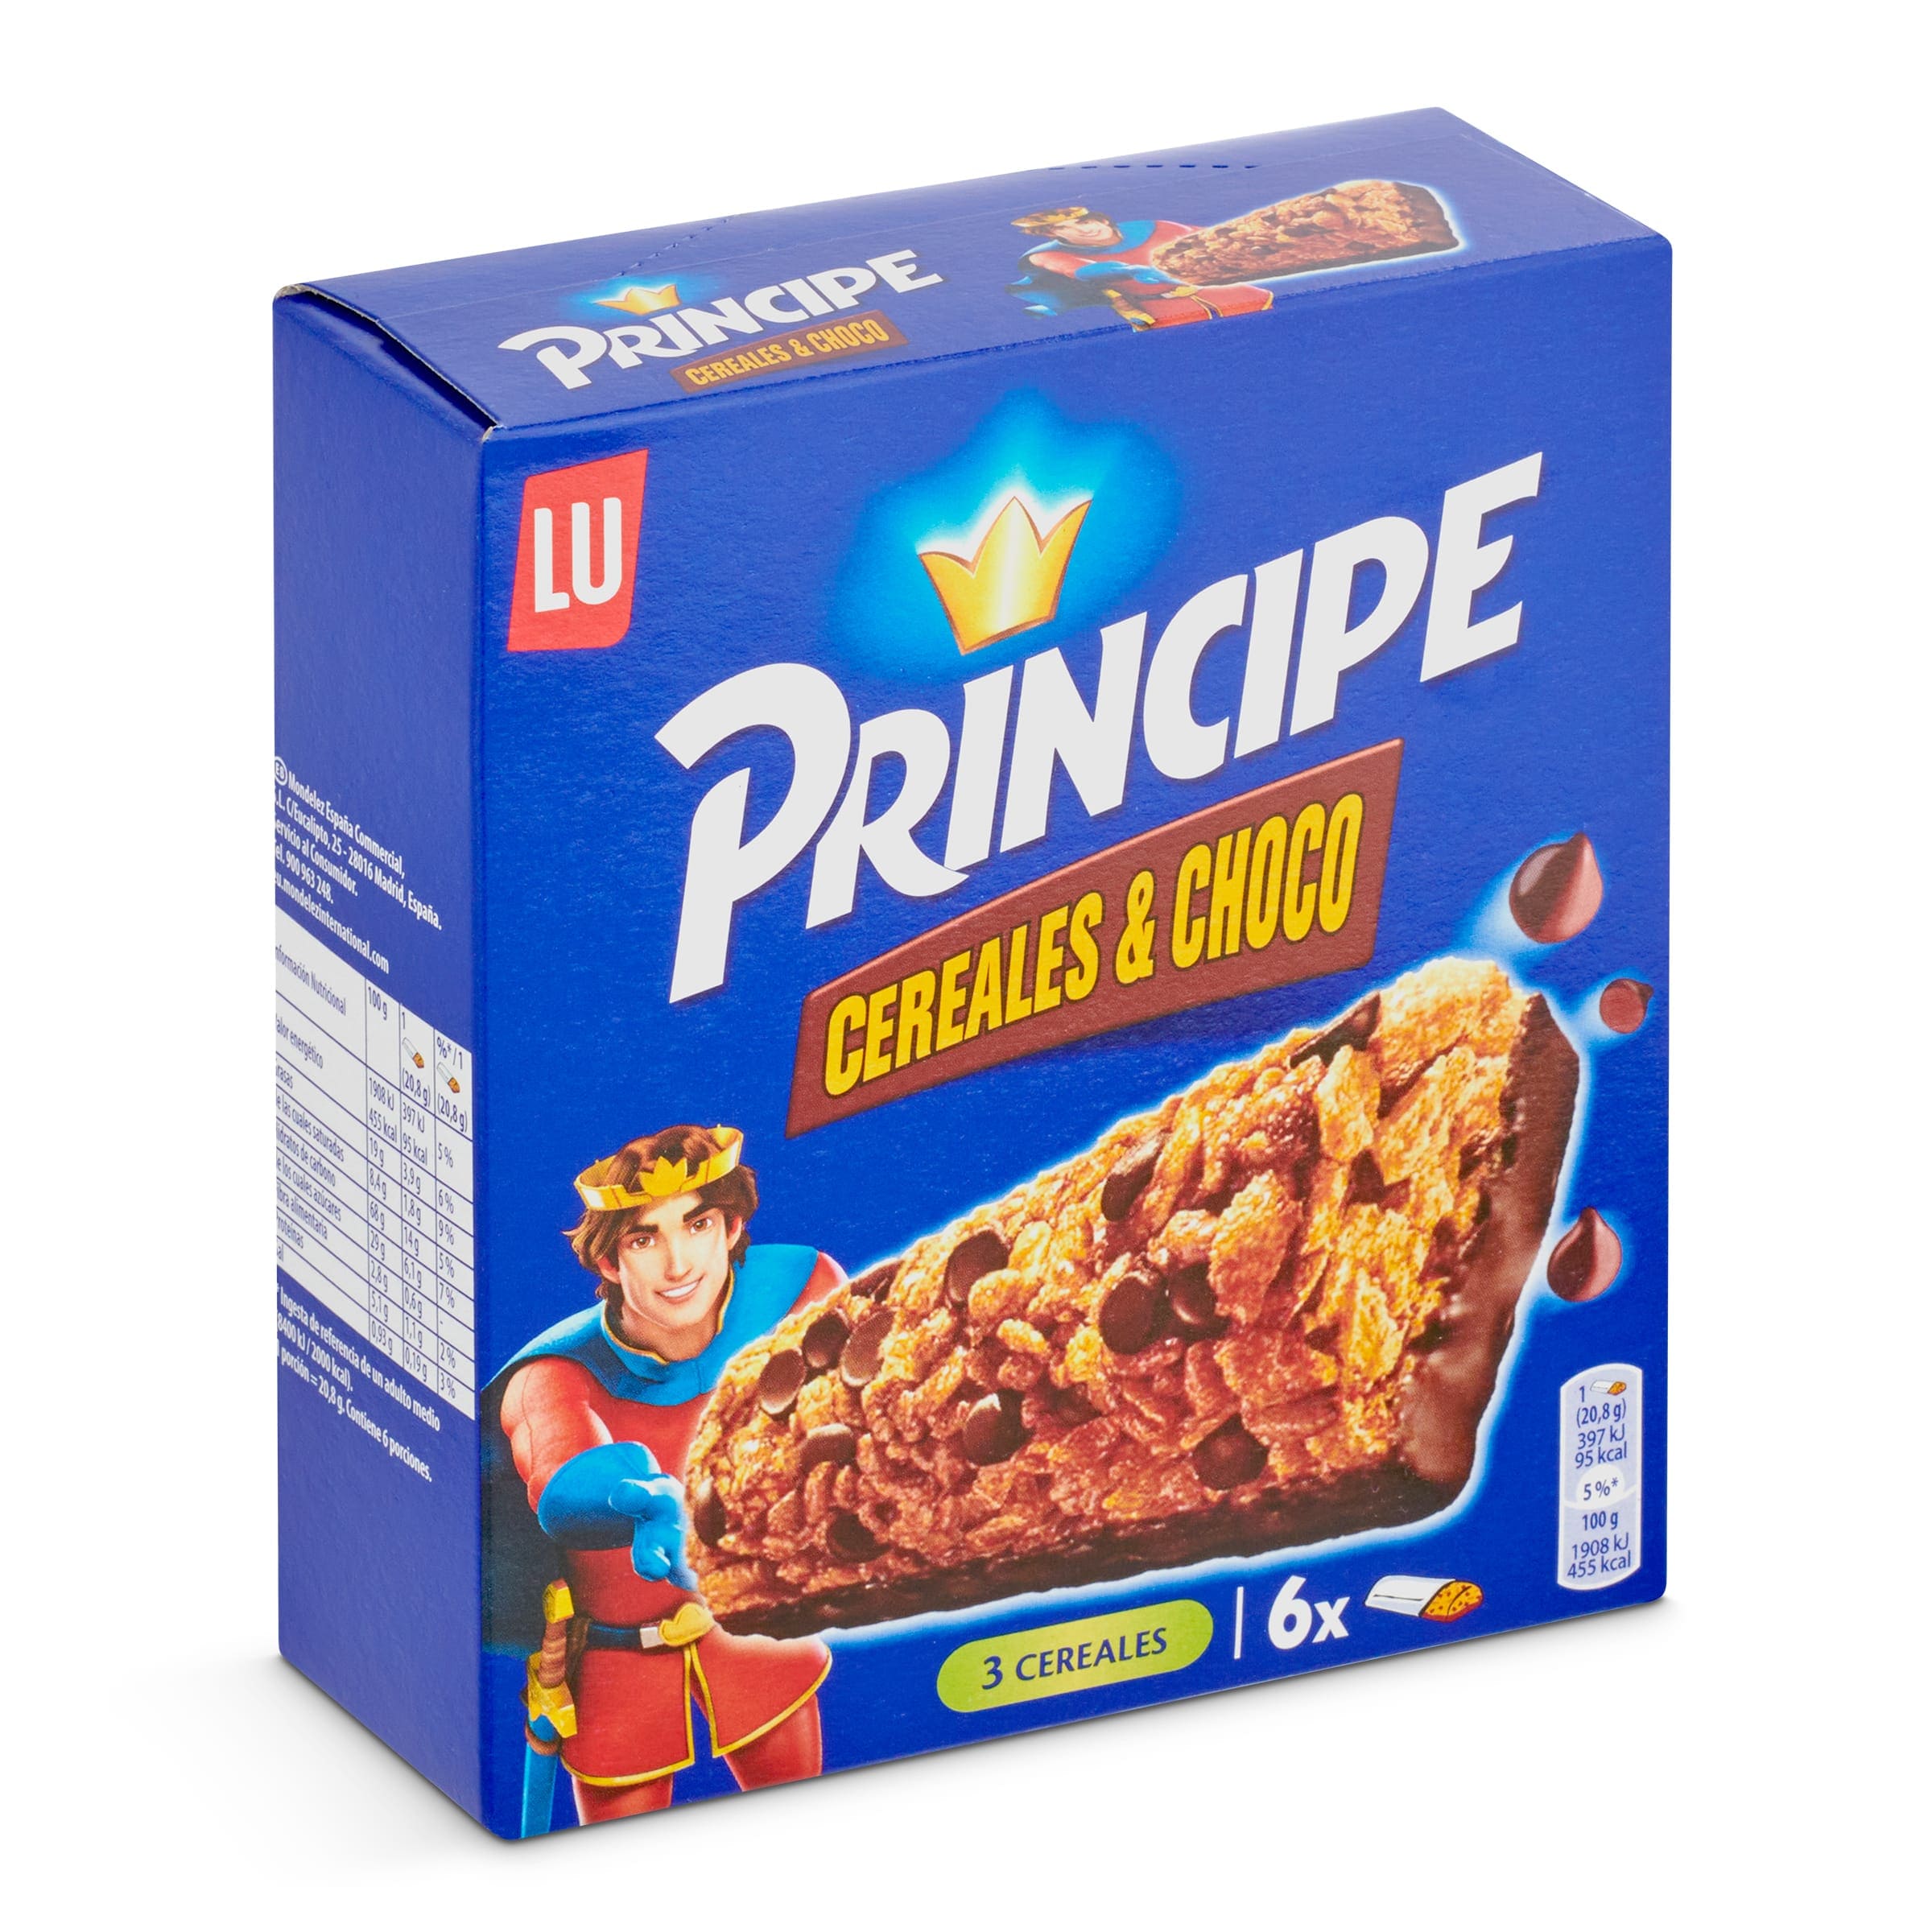 Barritas de cereales con chocolate con leche Gran Dia caja 150 g -  Supermercados DIA